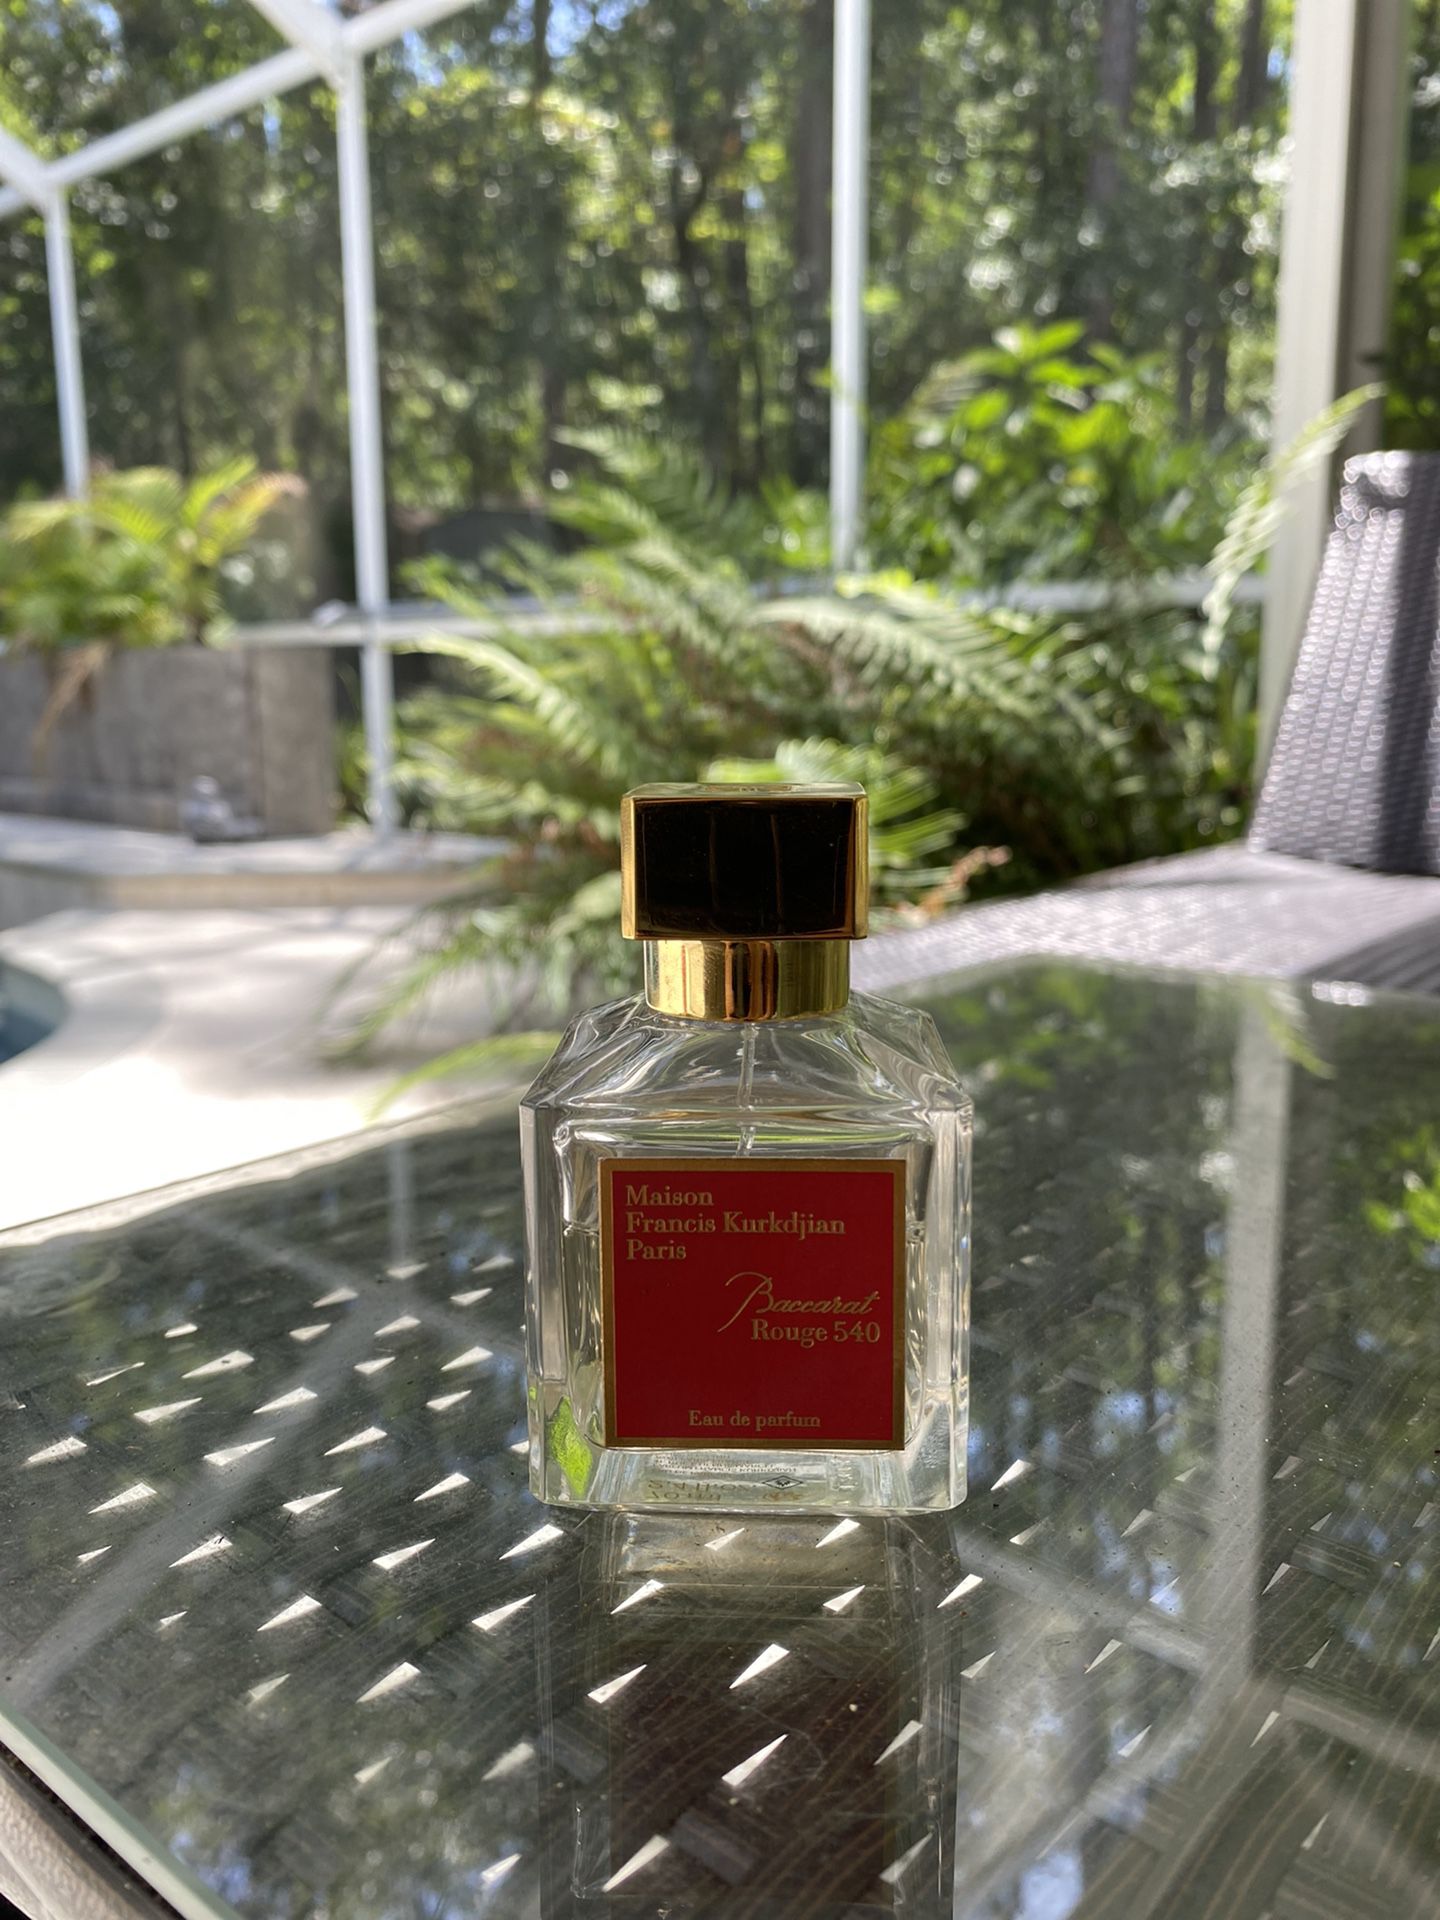 Maison Francis Kurkdjian 724 Eau De Parfumerie for Sale in Charlotte, NC -  OfferUp